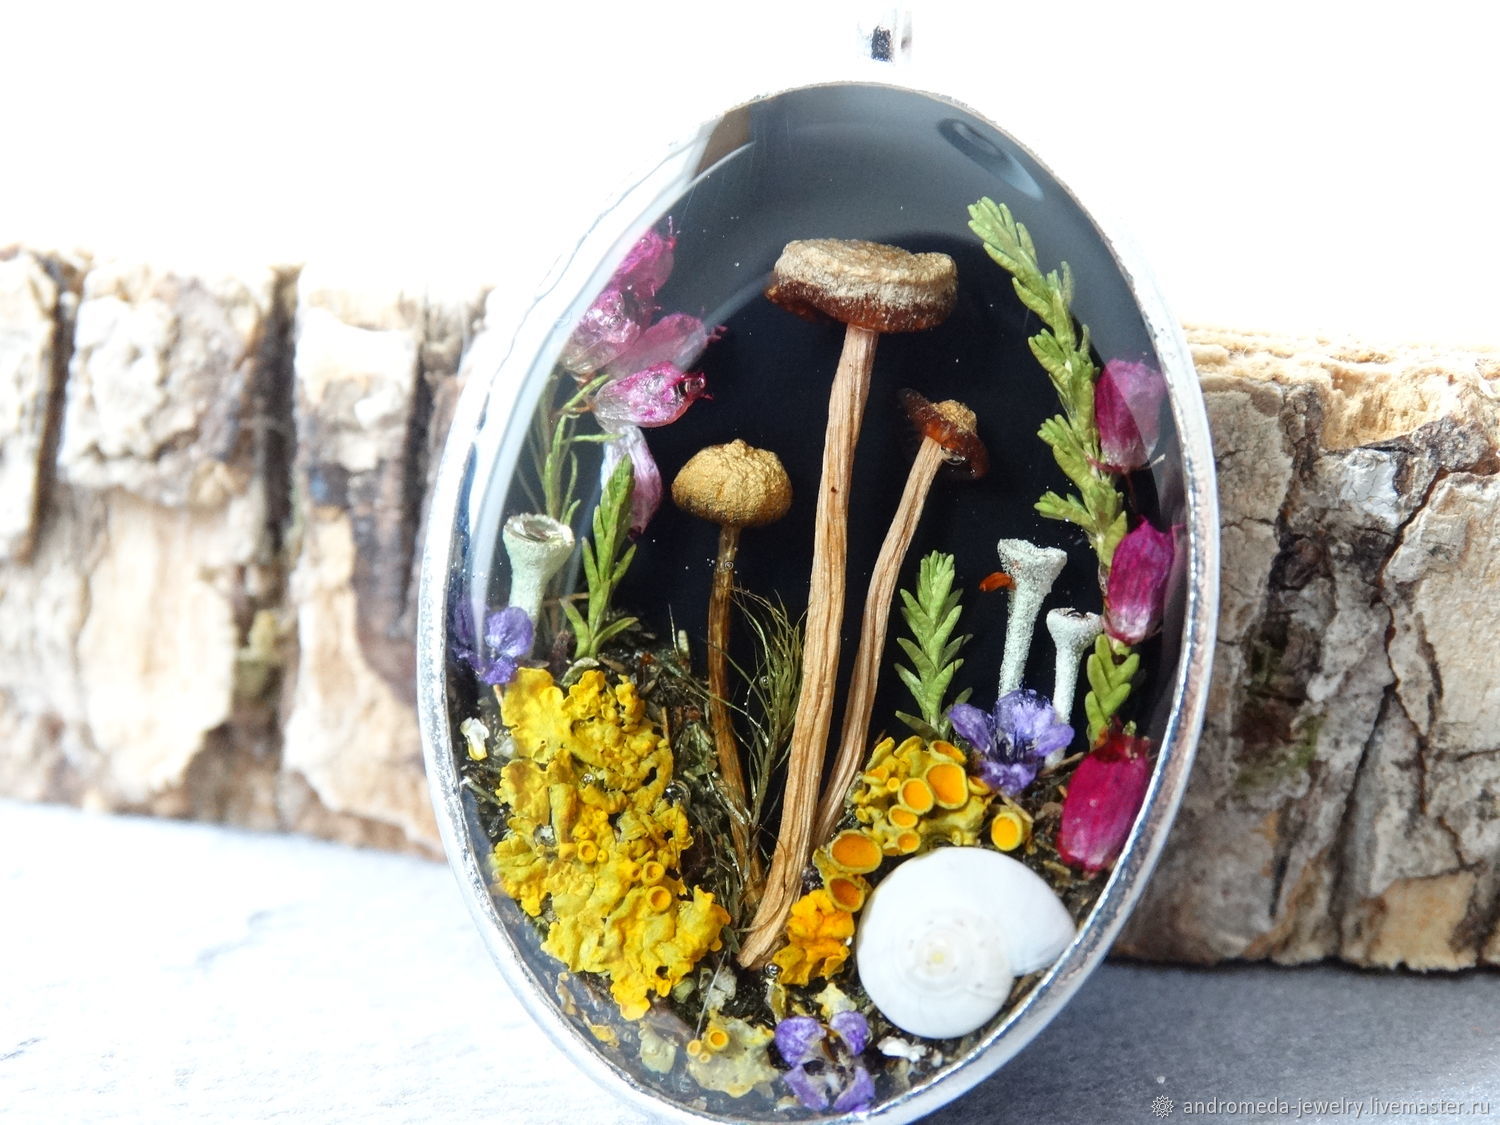 Лесной кулон с настоящими грибами, мхом, лишайником, Кулон, Кингисепп,  Фото №1